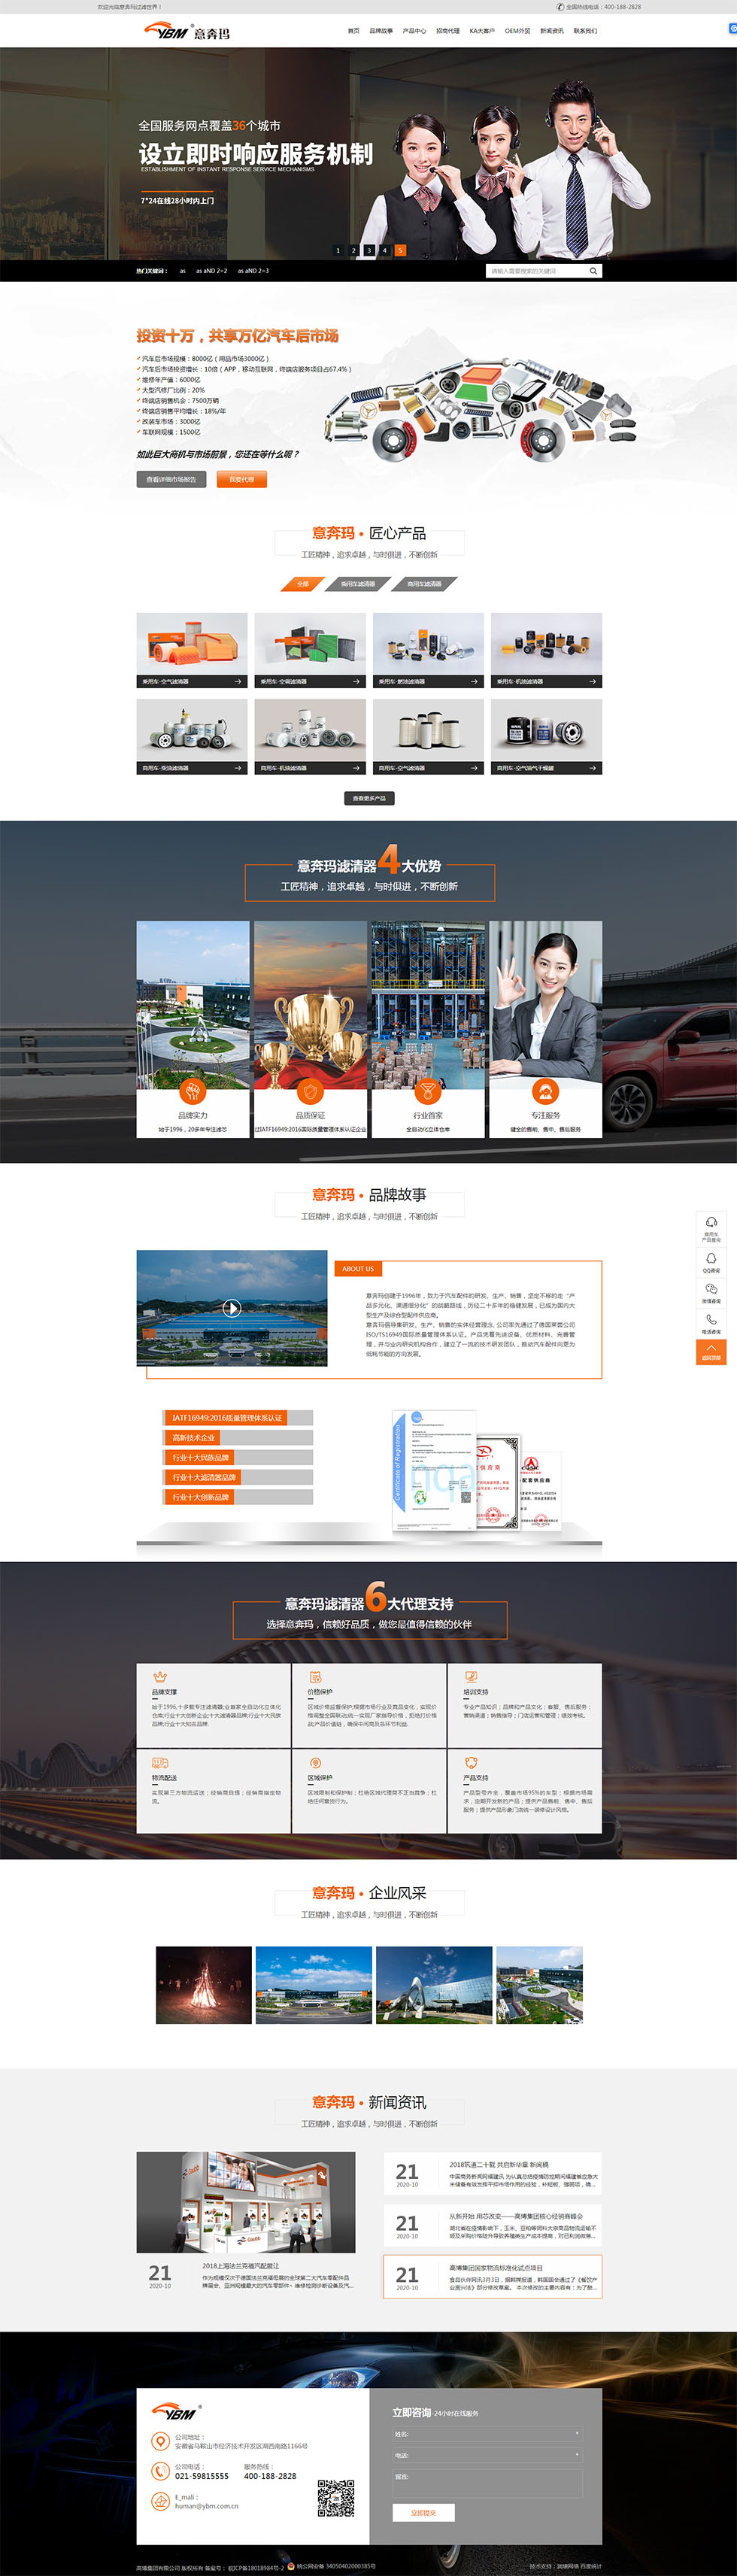 上海网站定制开发公司